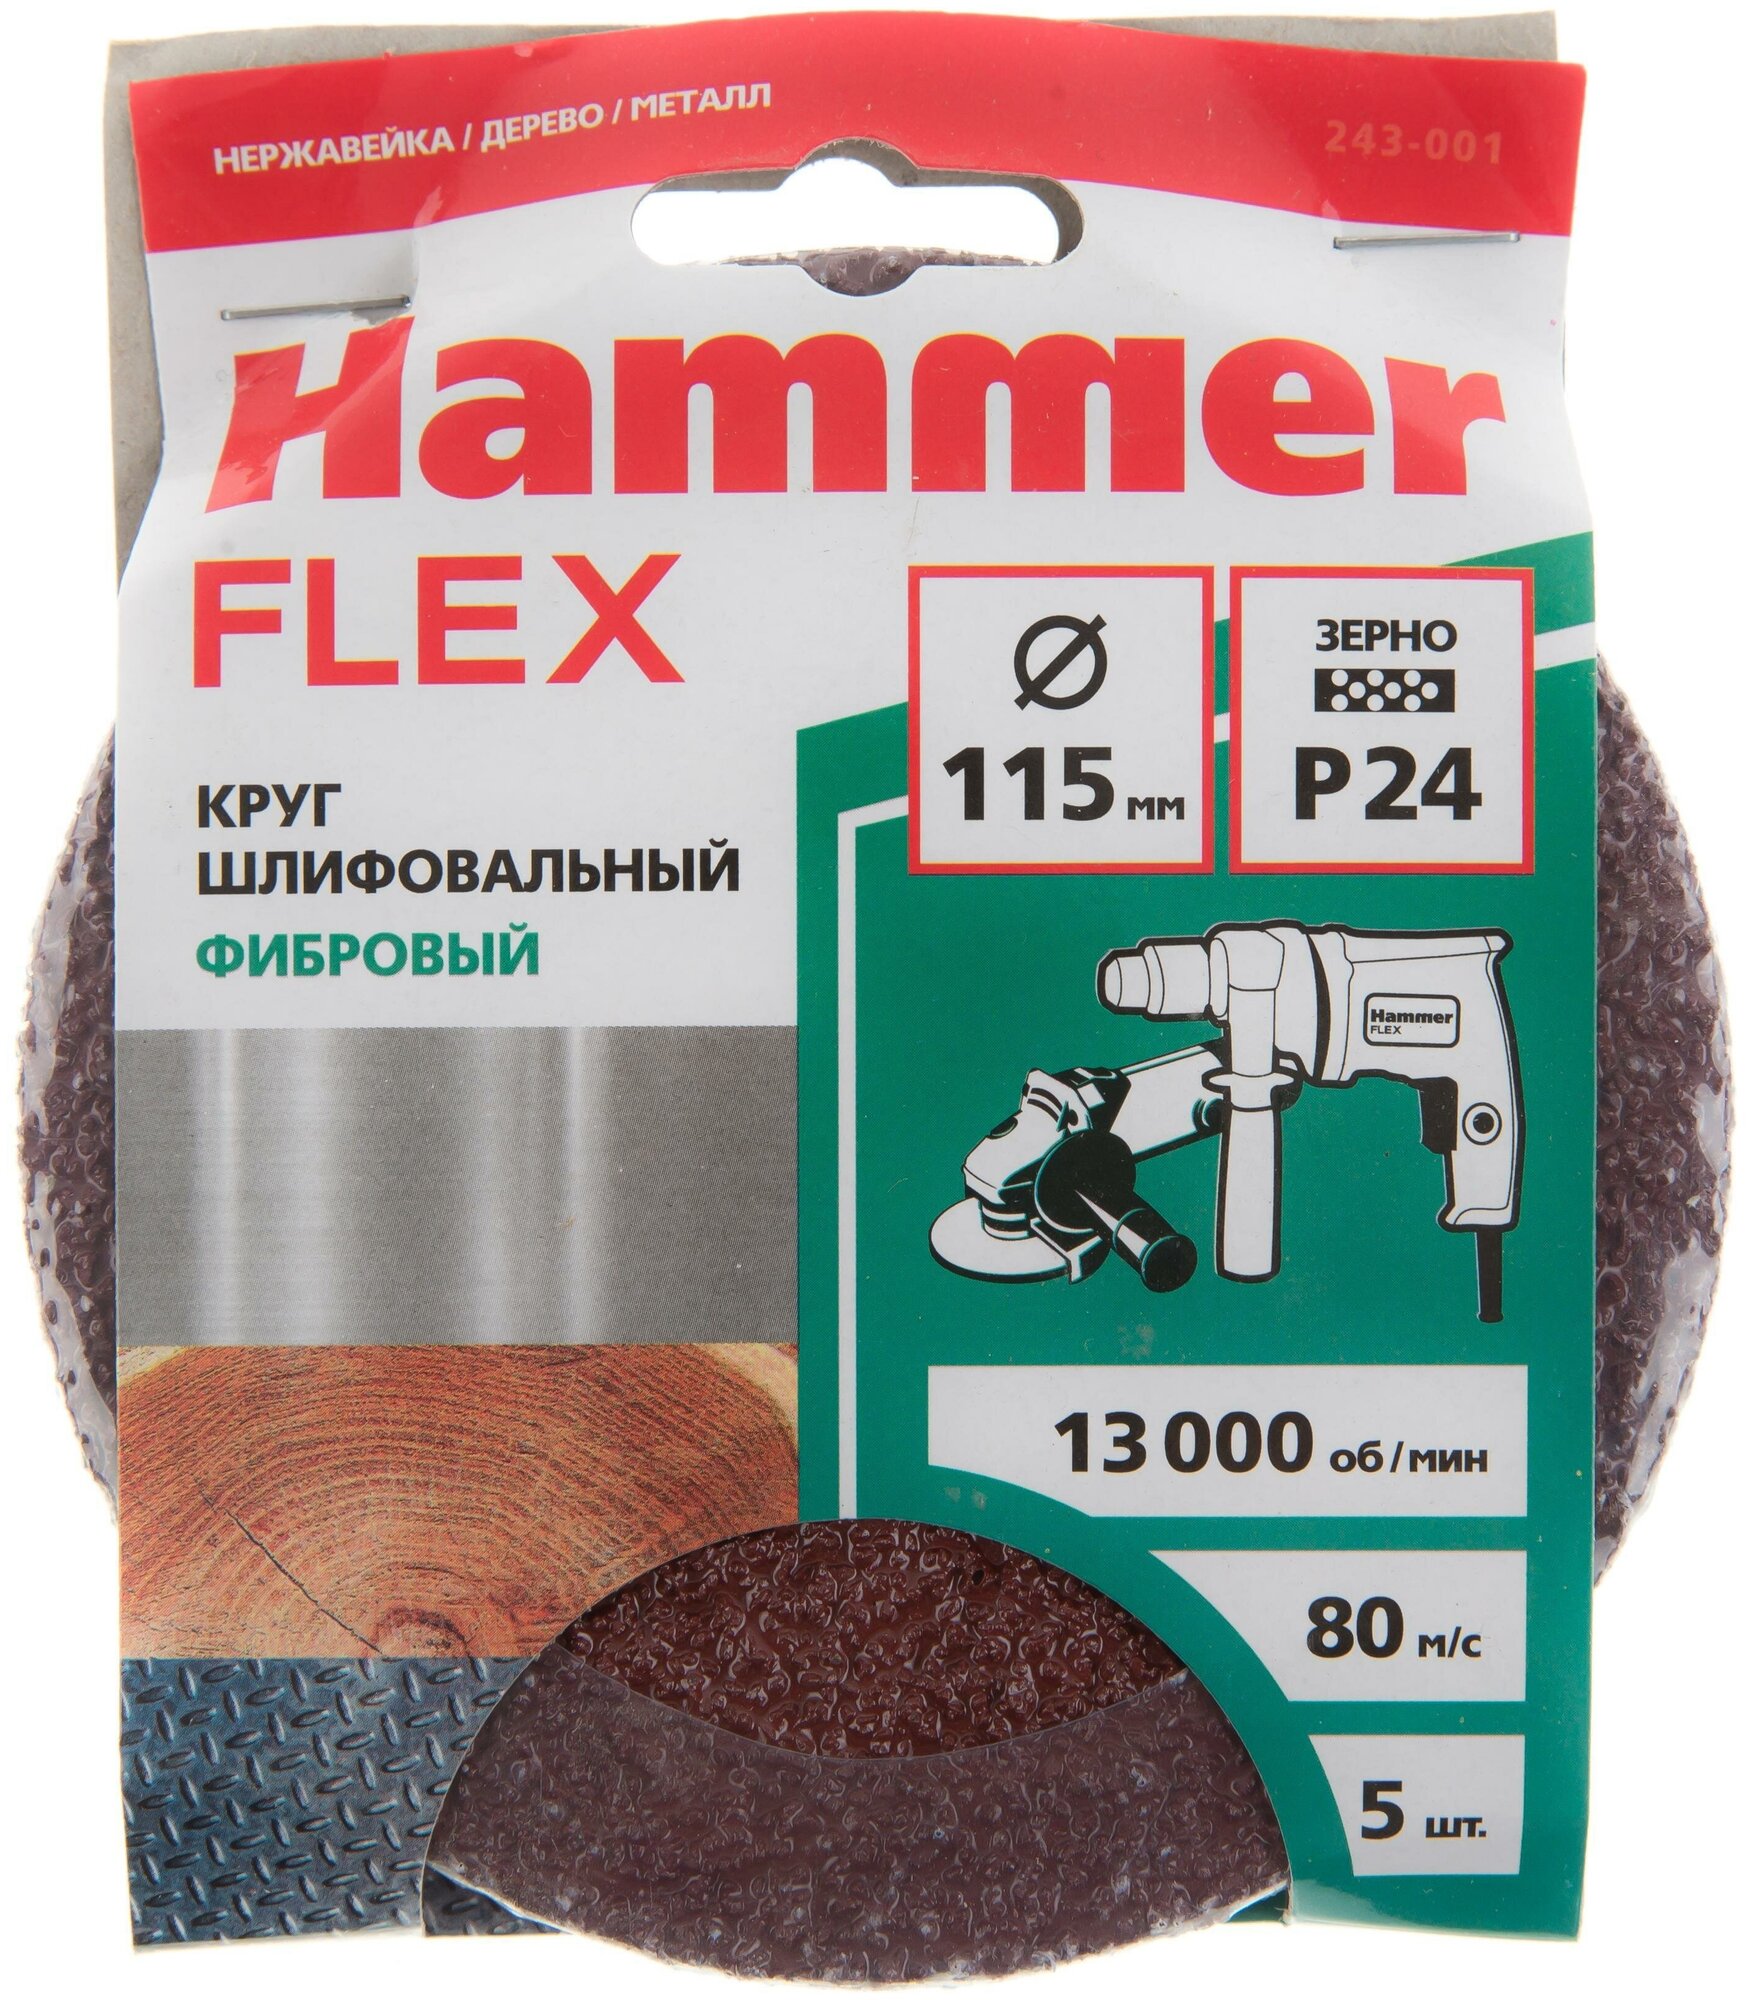 Круг шлифовальный фибровый Hammer Flex 243-001, 115мм, P24, 13000 об/мин, 80м/с (5шт)